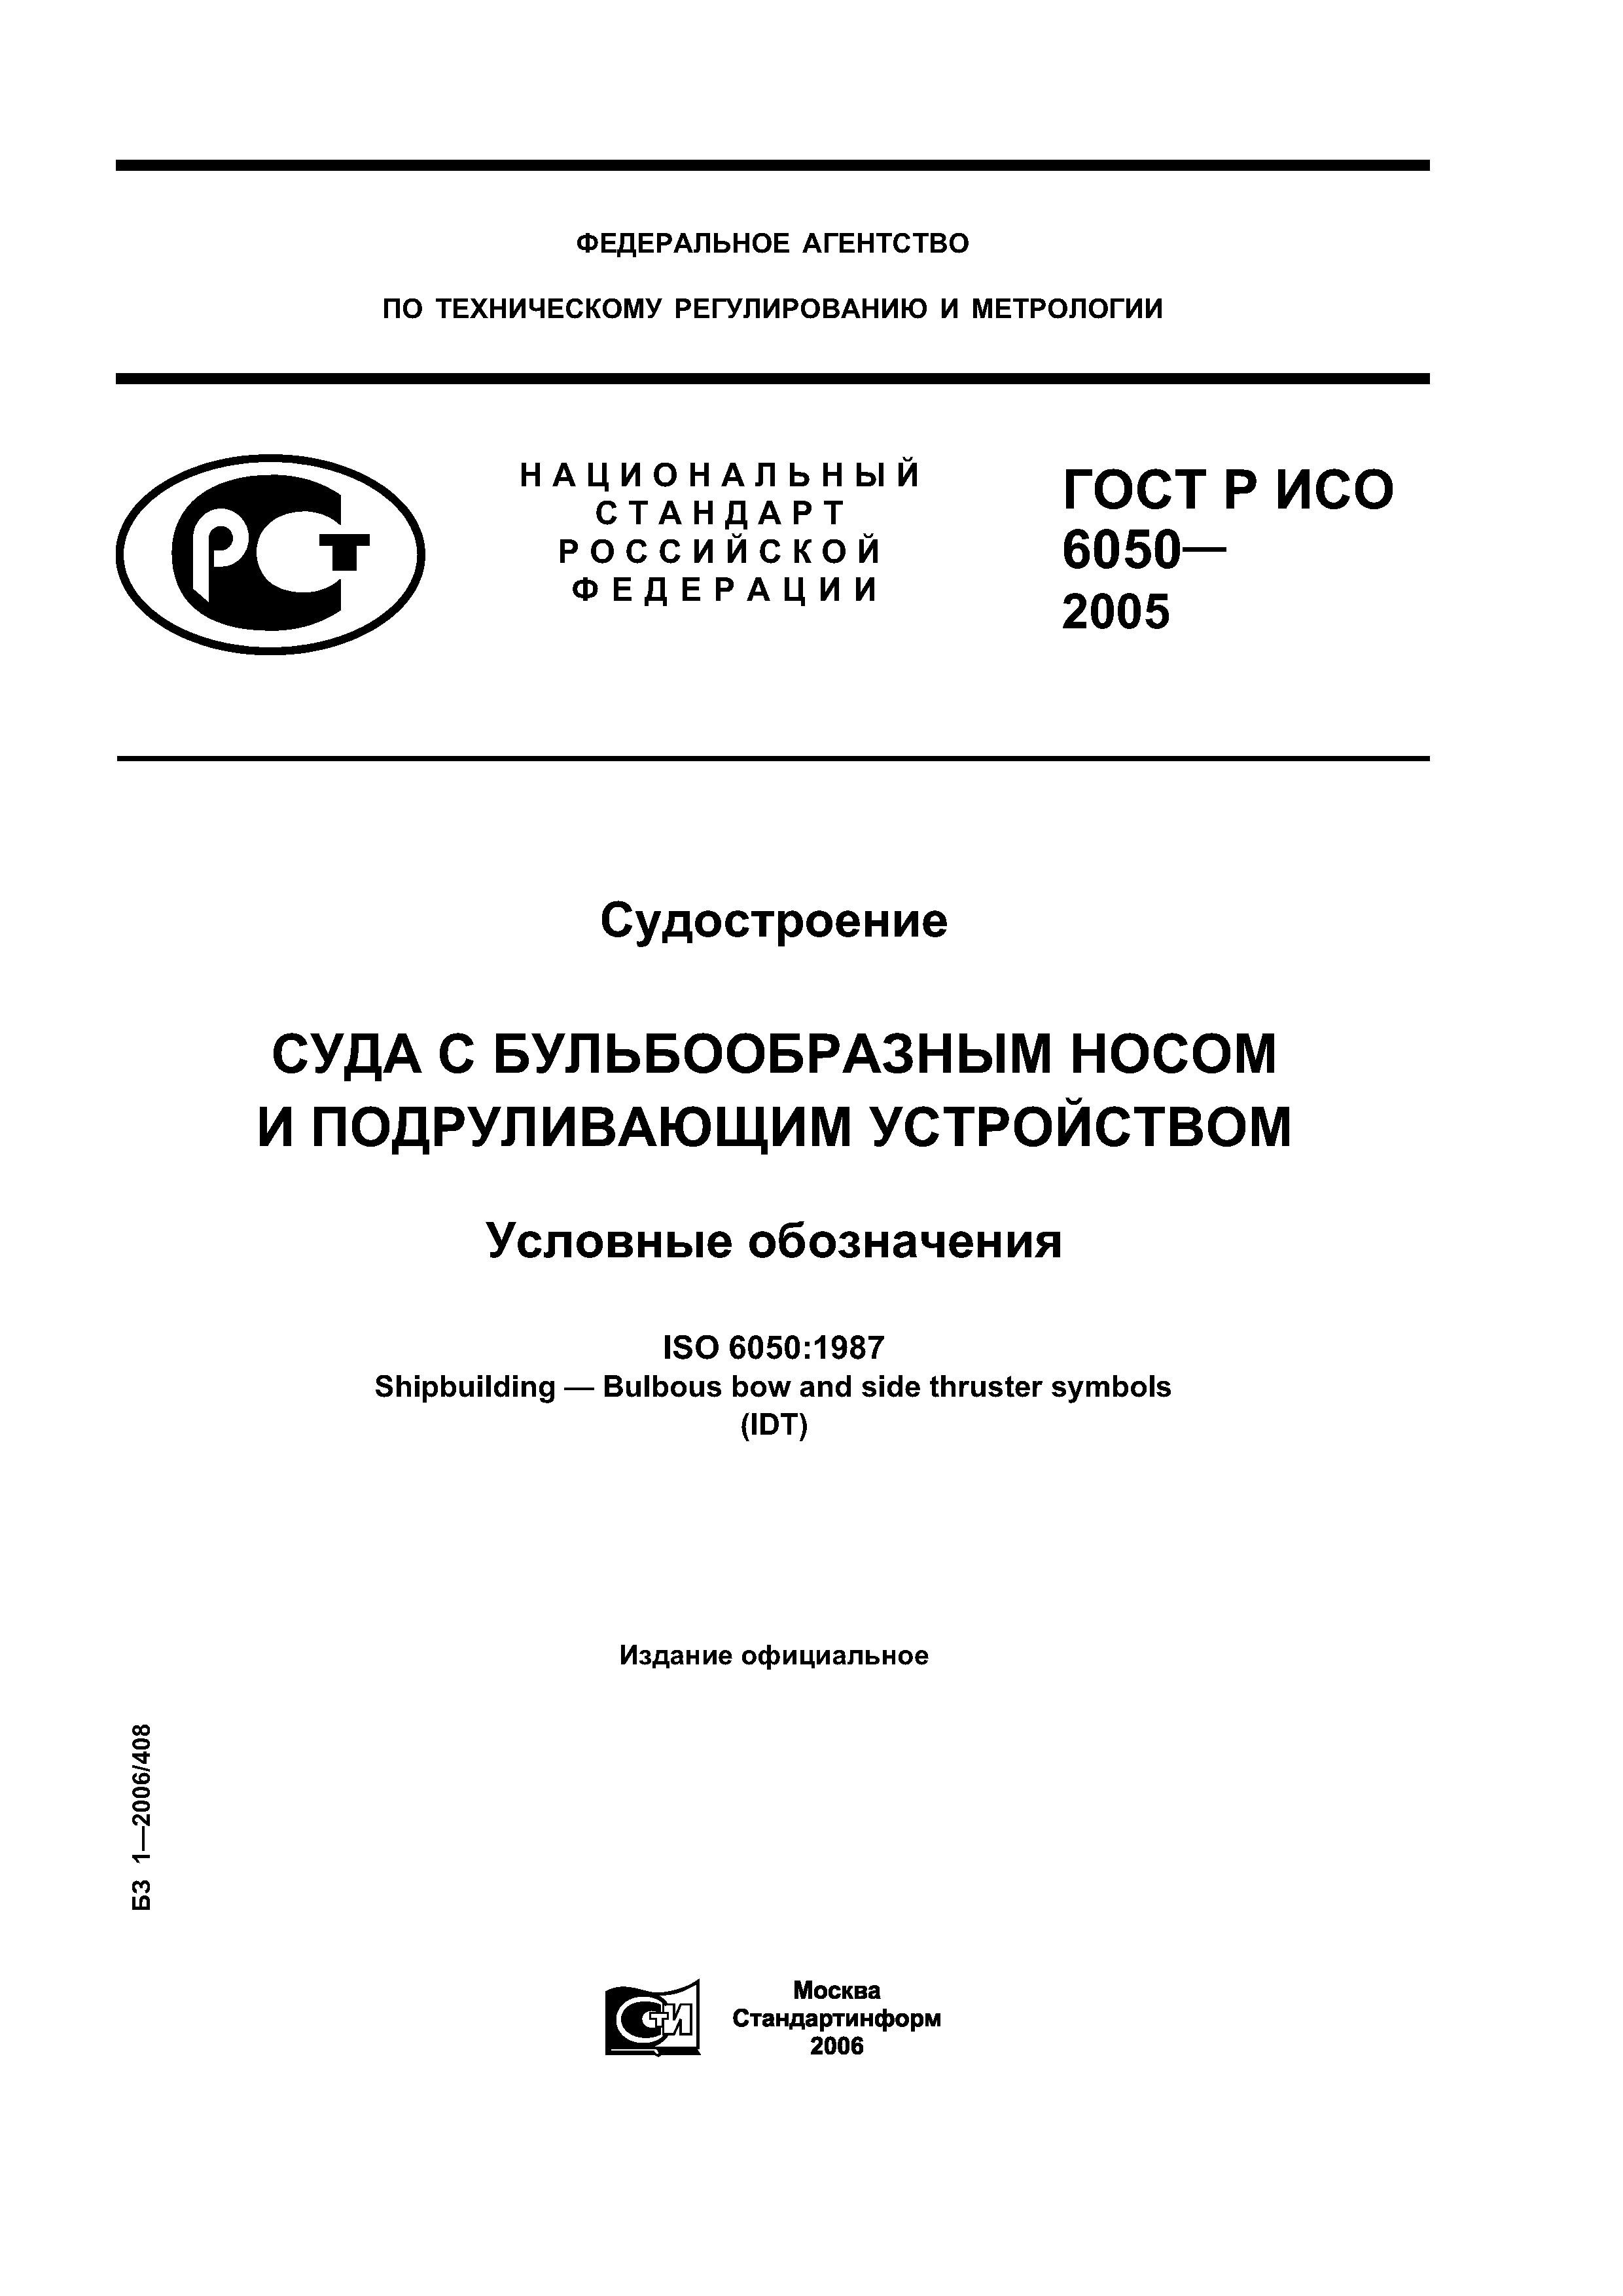 ГОСТ Р ИСО 6050-2005